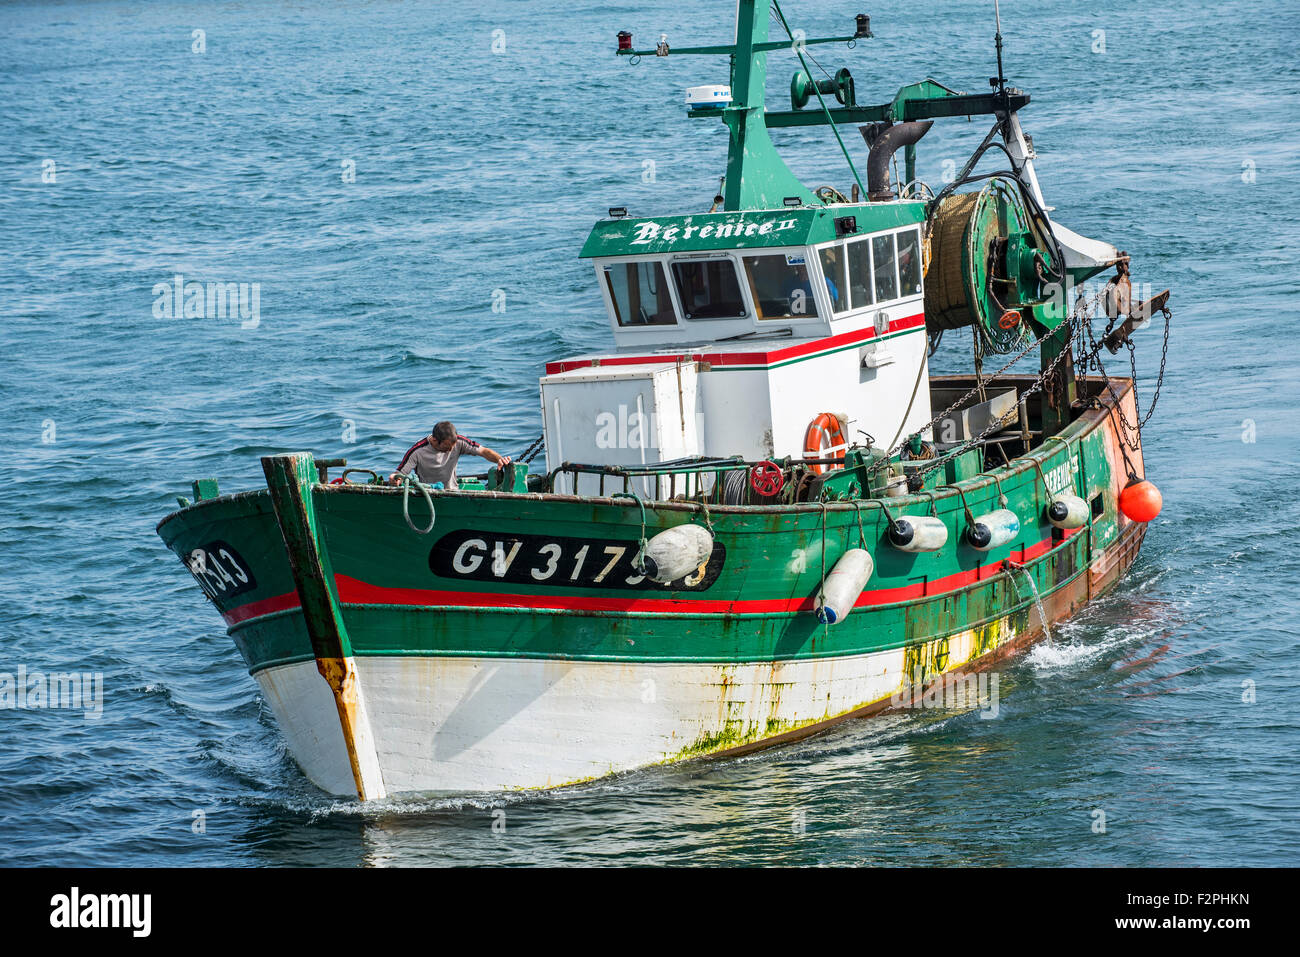 Pêcheur à bord du bateau de pêche chalutier en bois vert en mer, Bretagne, France Banque D'Images